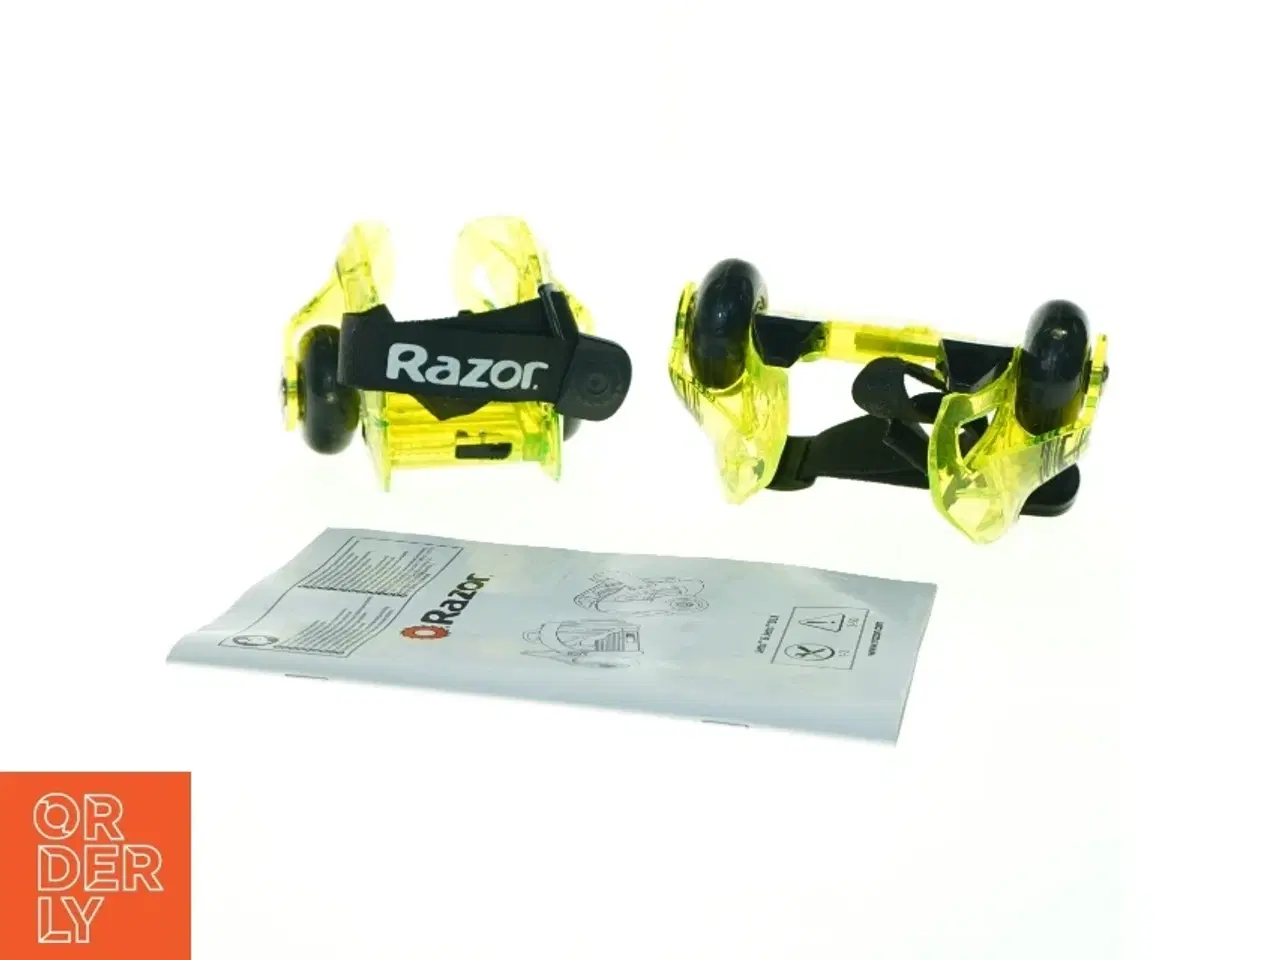 Billede 4 - Razor Jetts hæl-rulleskøjter fra Razor (str. Max 80 kilo)